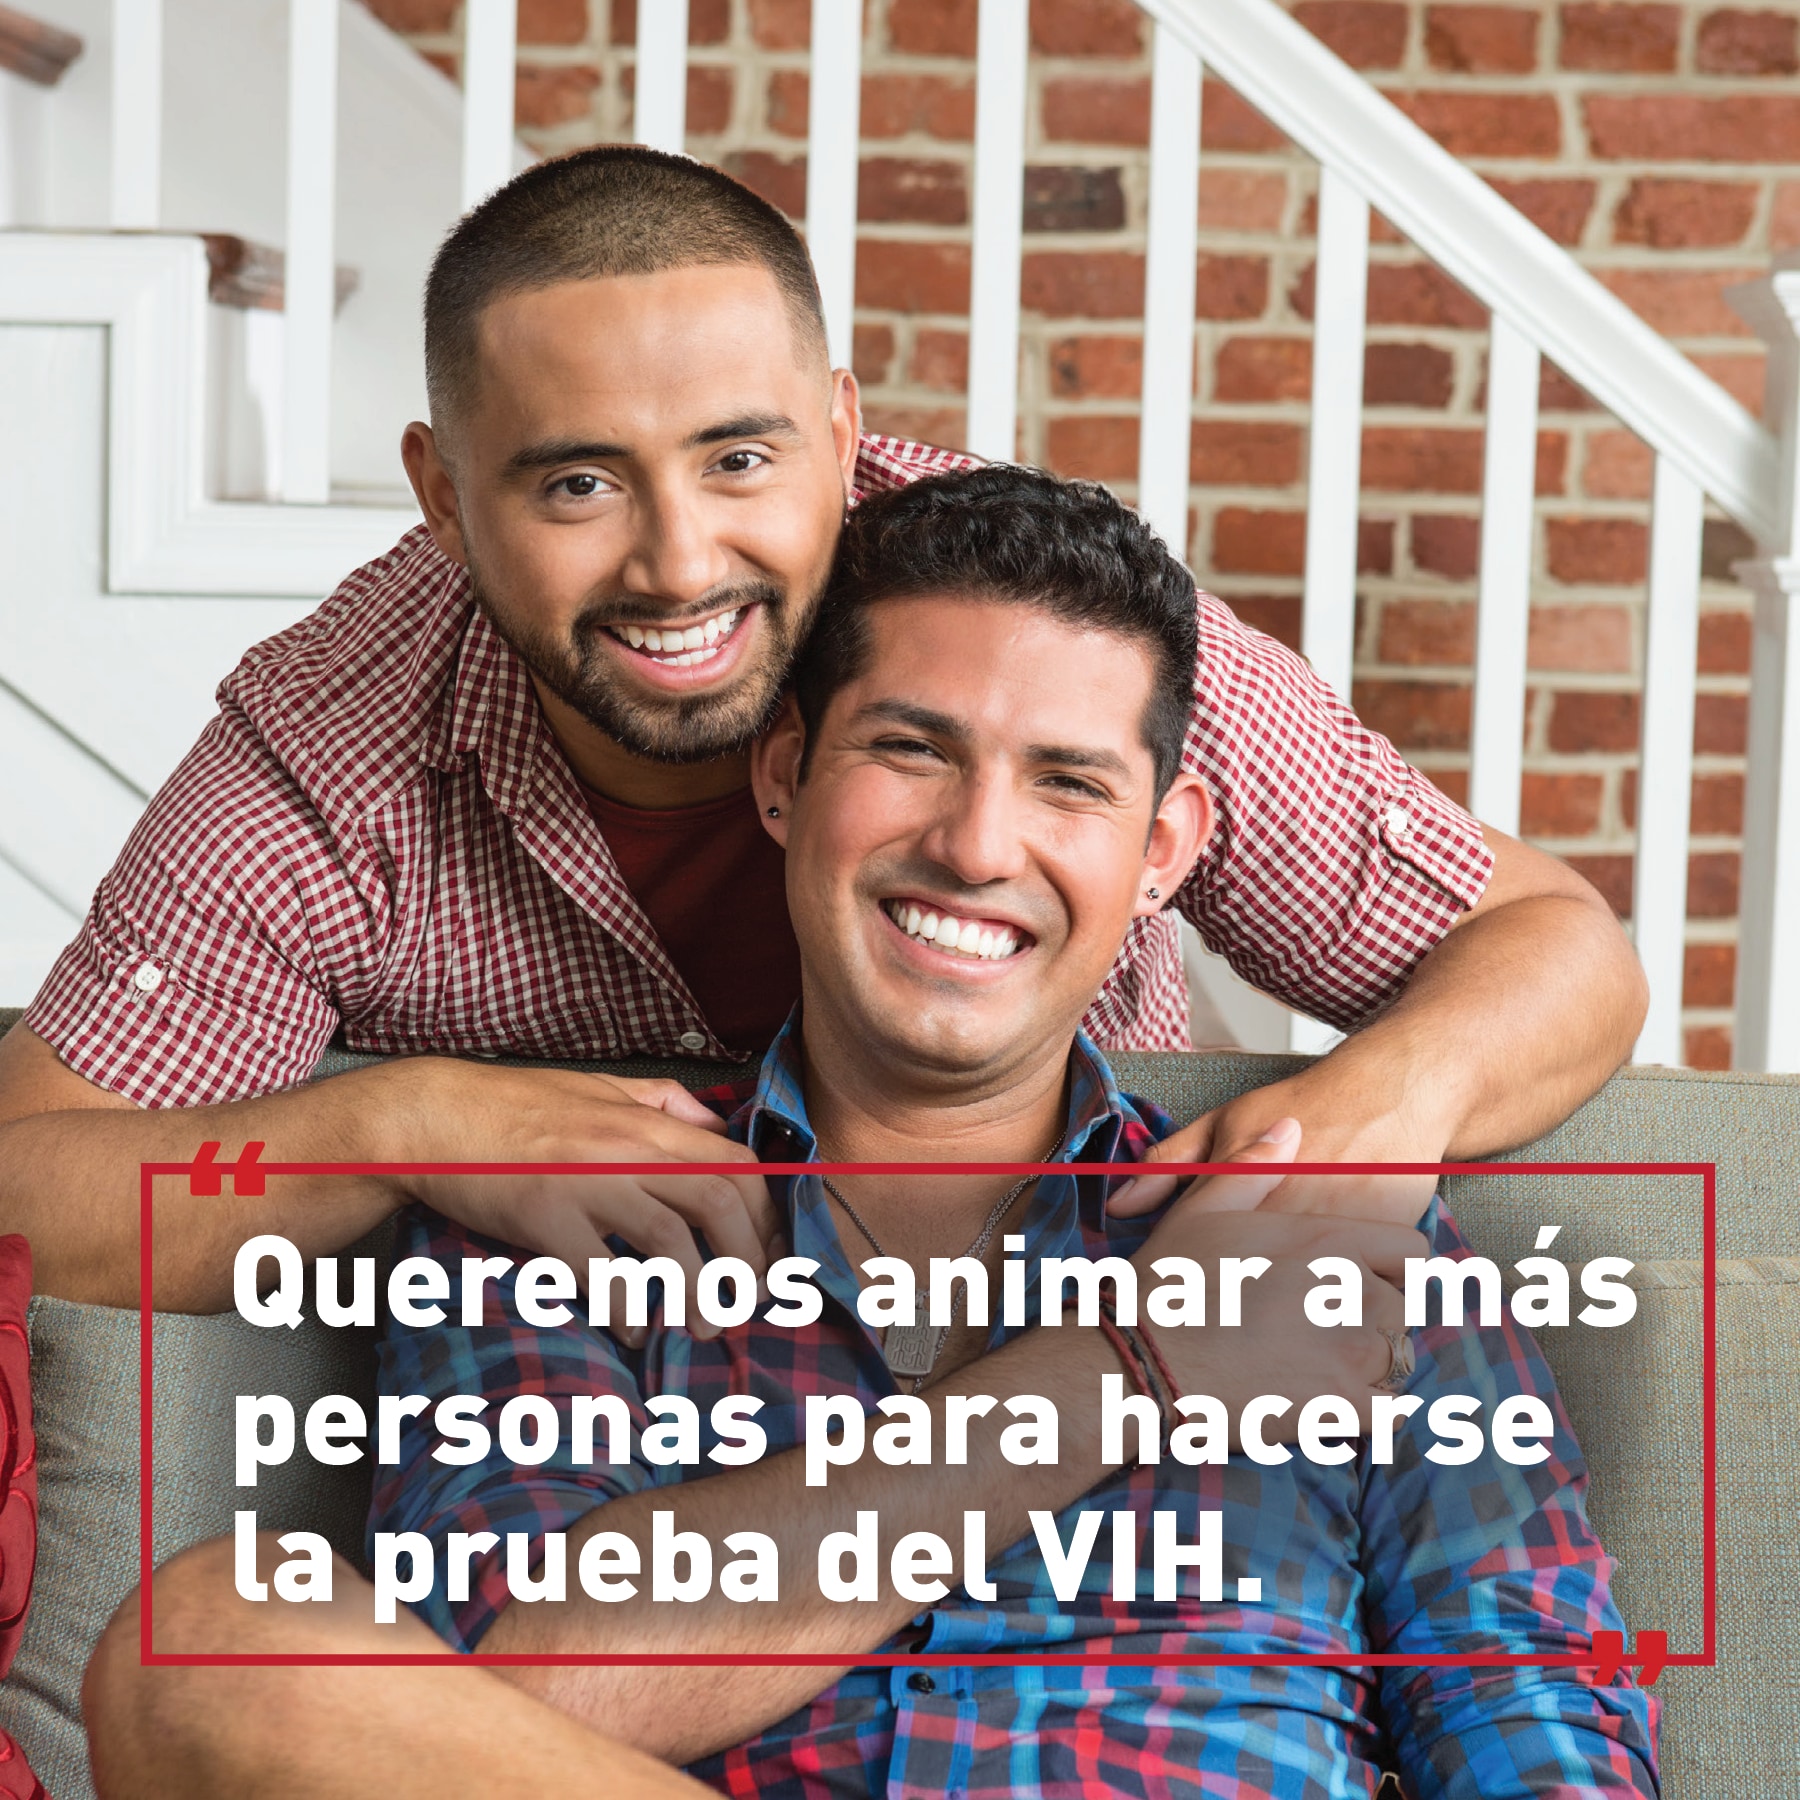 Dos hombres abrasando. Texto: “Queremos animar a más personas para hacerse la prueba del VIH.”